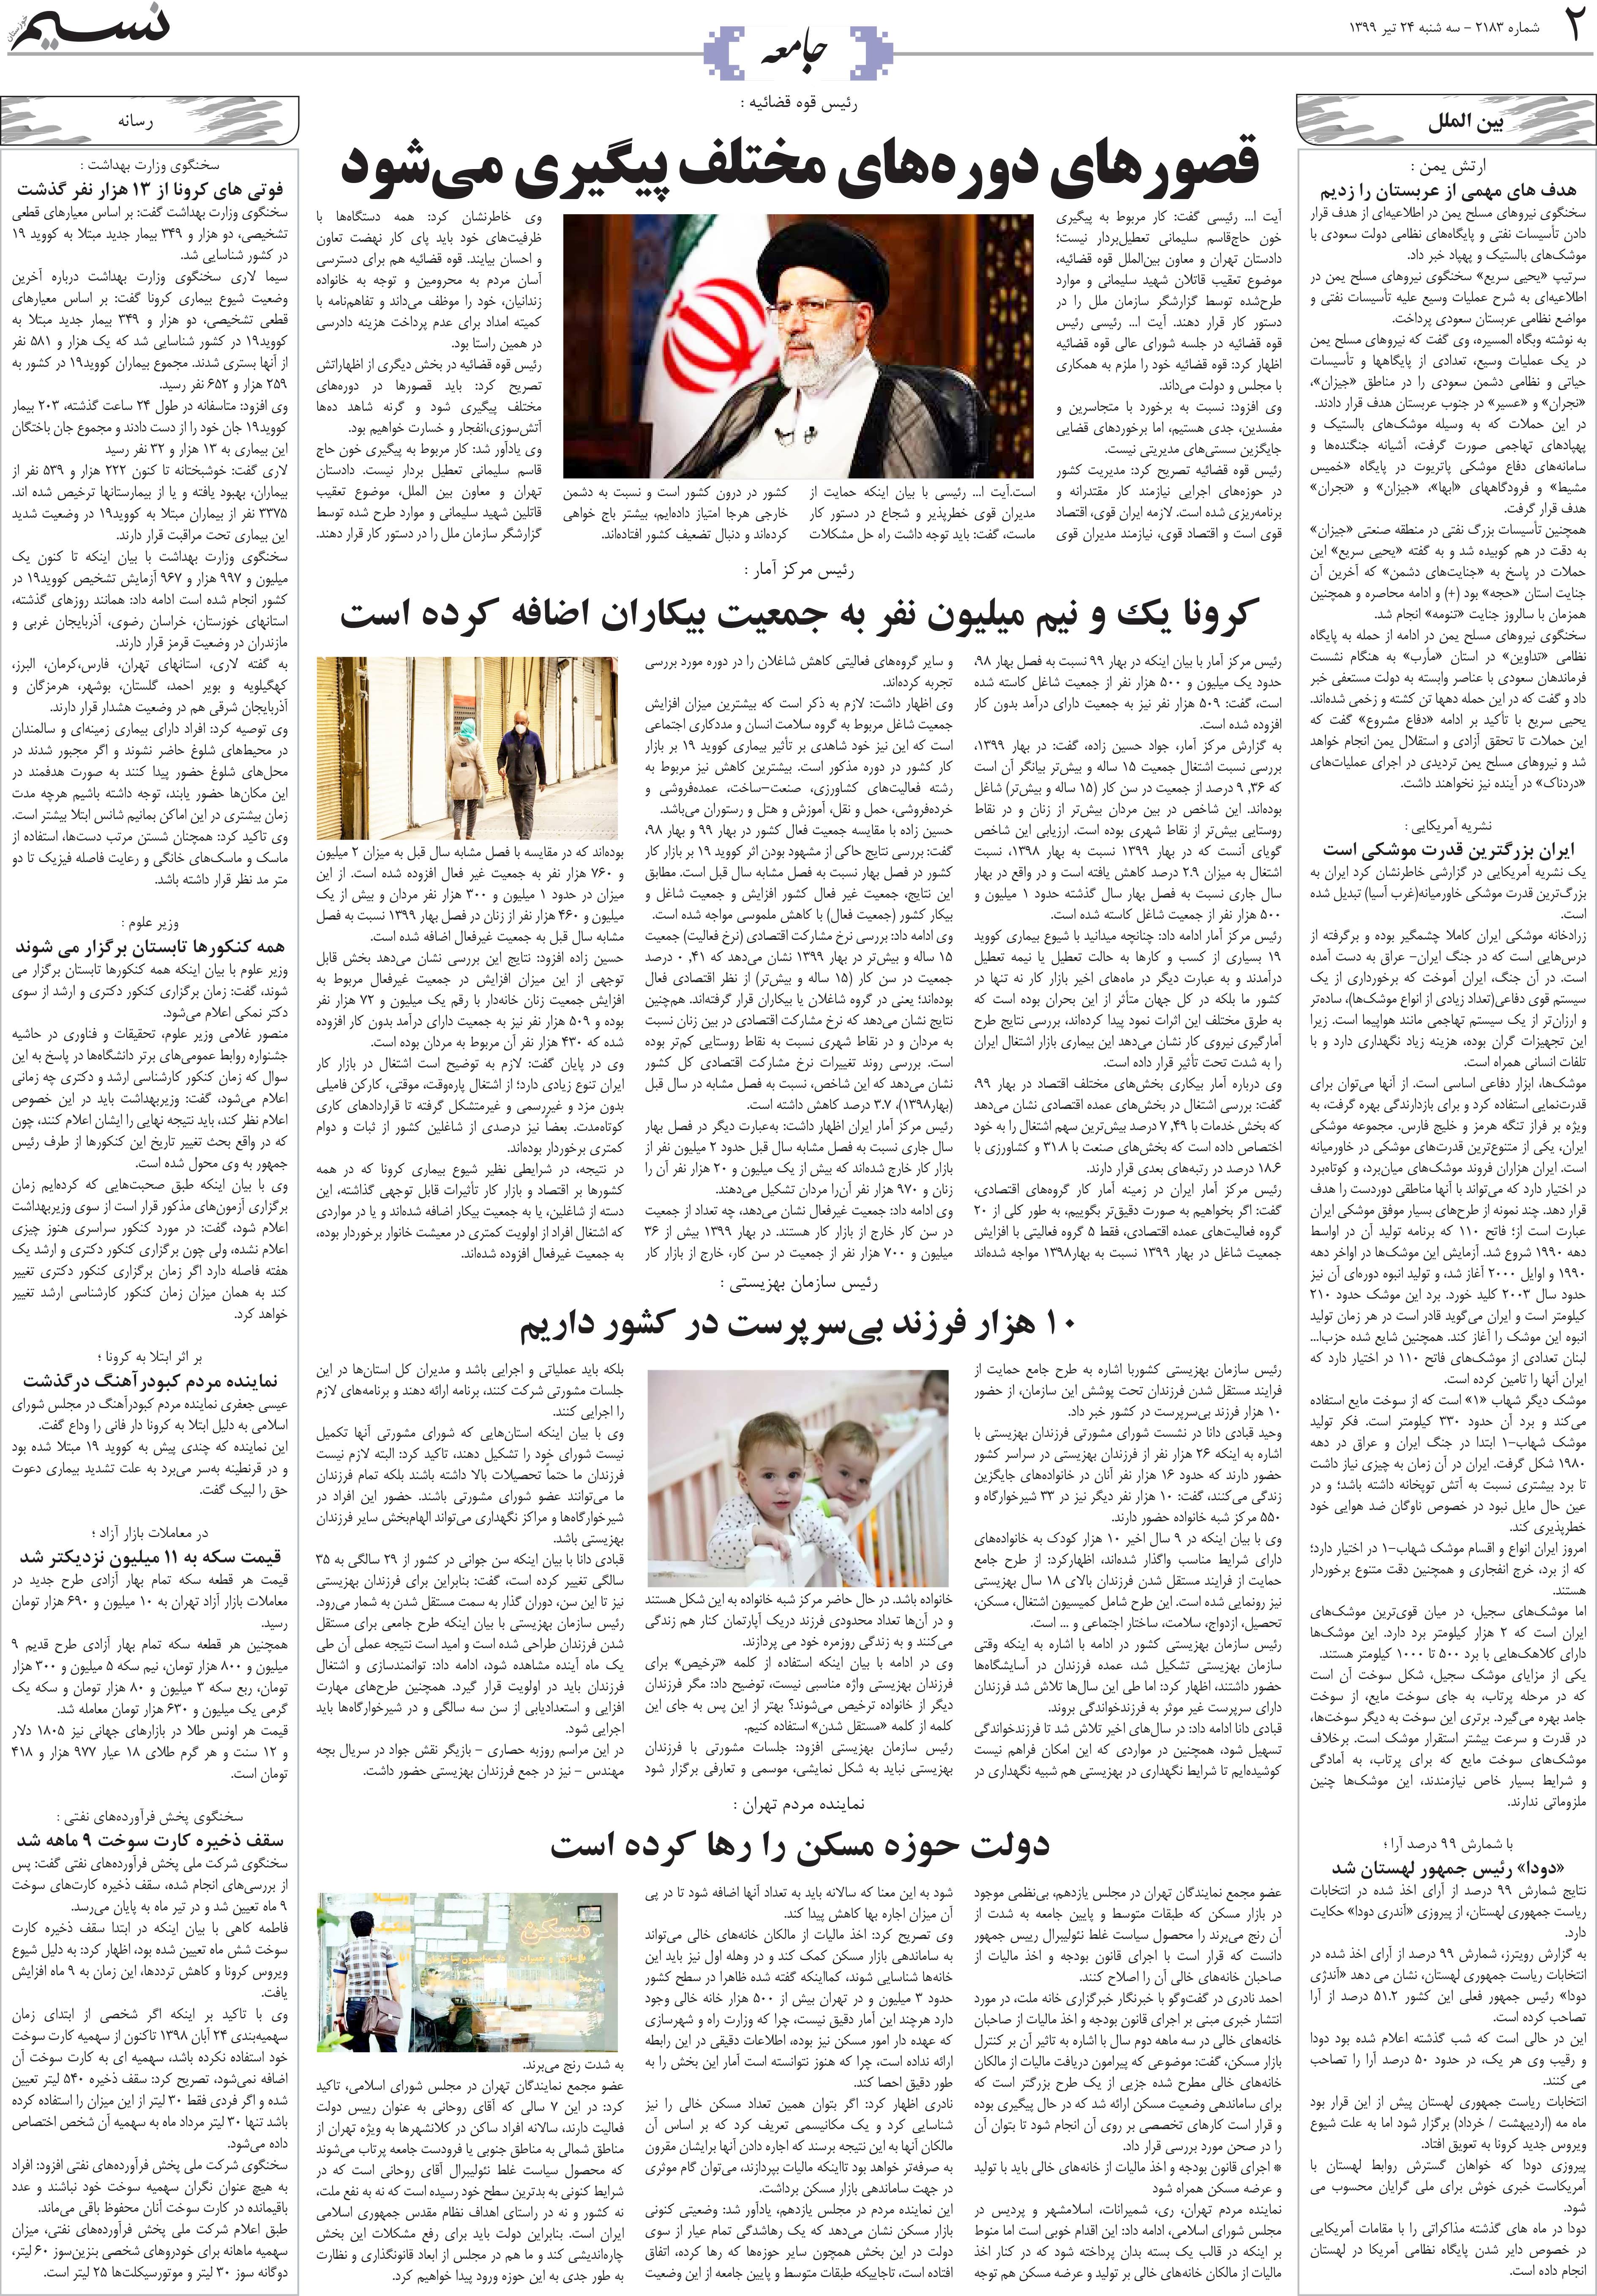 صفحه جامعه روزنامه نسیم شماره 2183